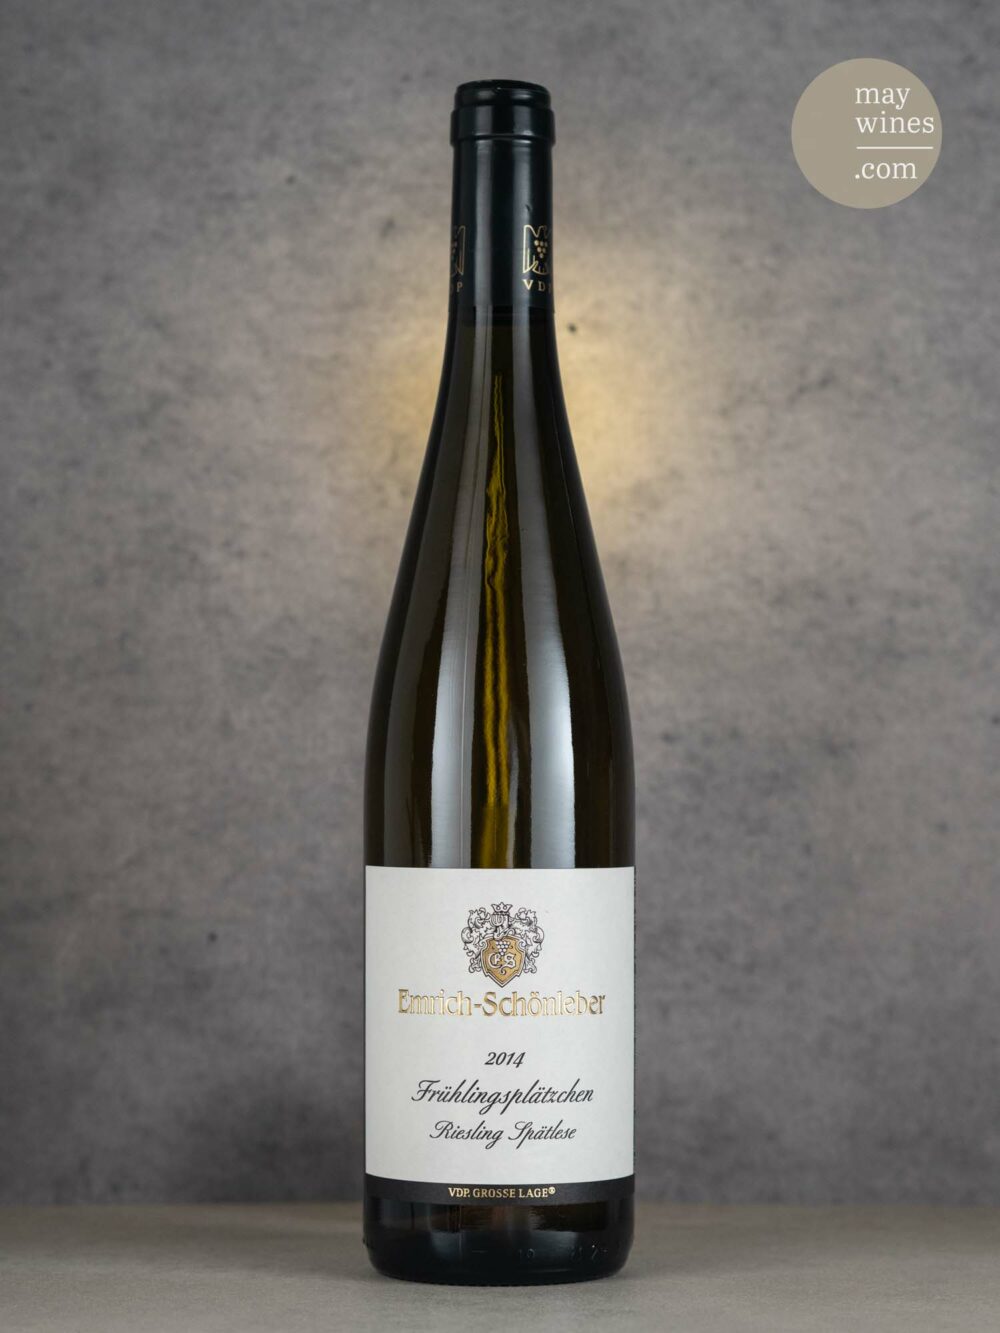 May Wines – Süßwein – 2014 Frühlingsplätzchen Riesling Spätlese - Emrich-Schönleber